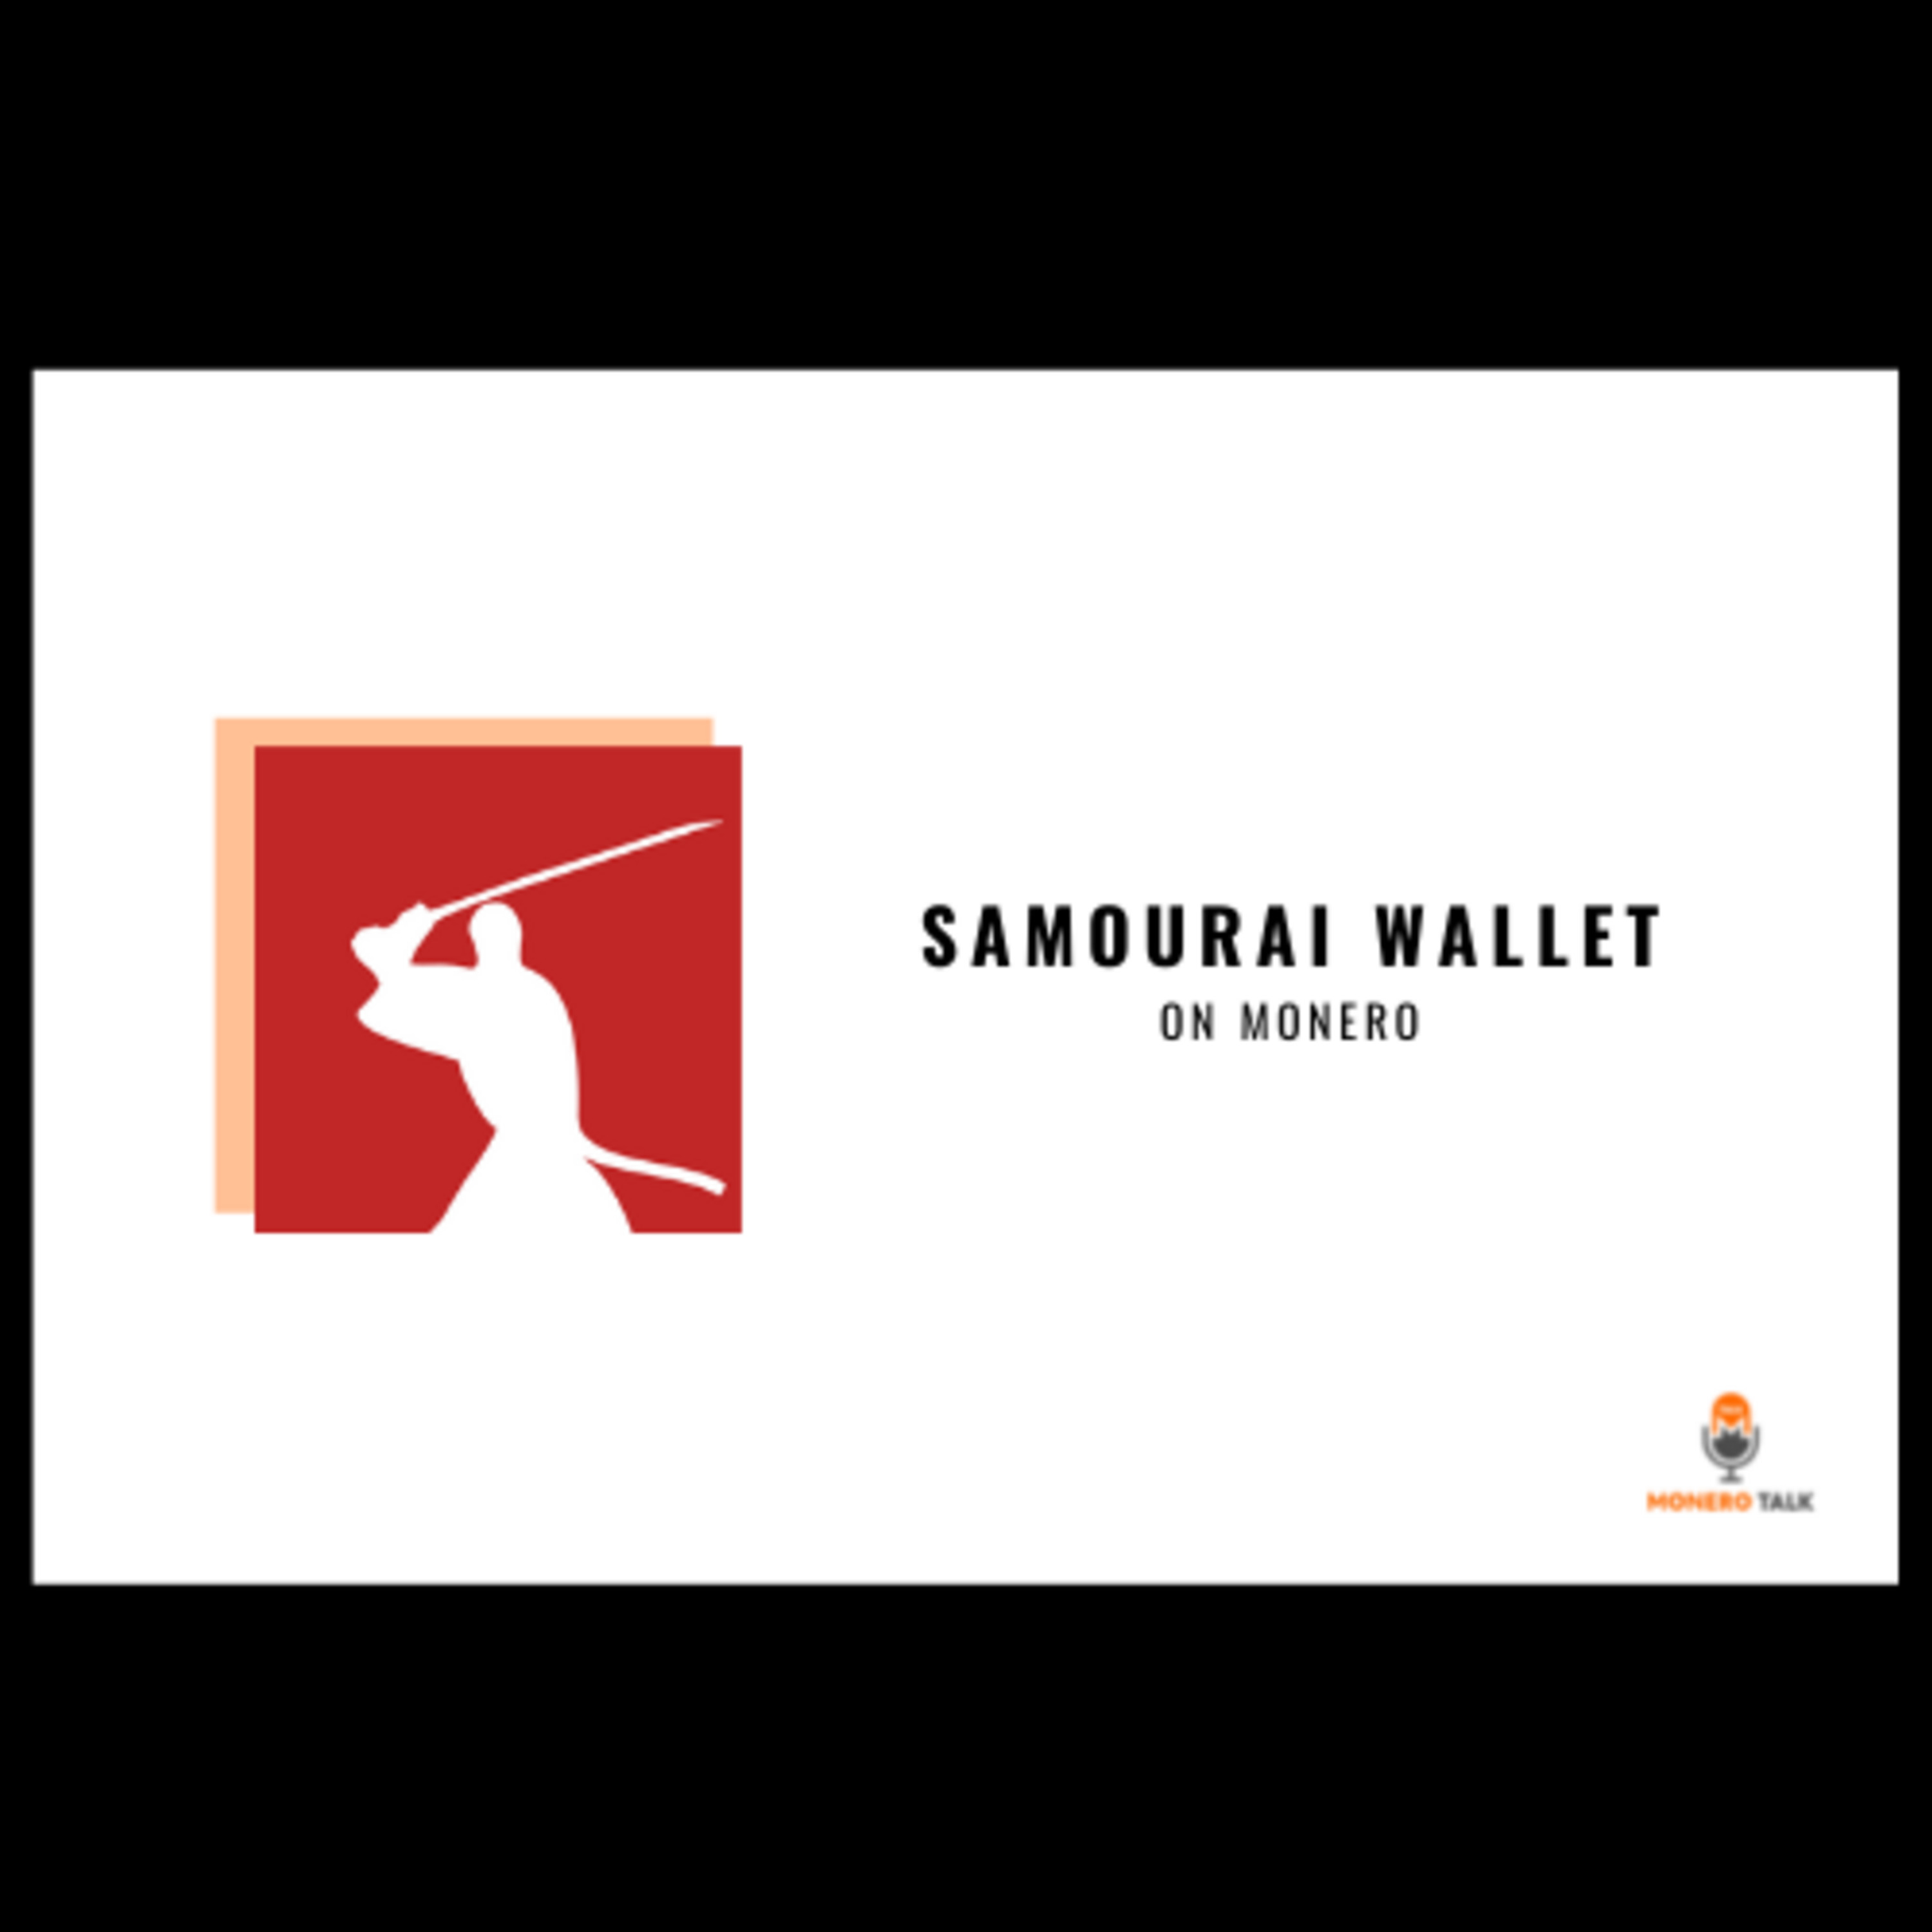 Samourai Wallet on Monero